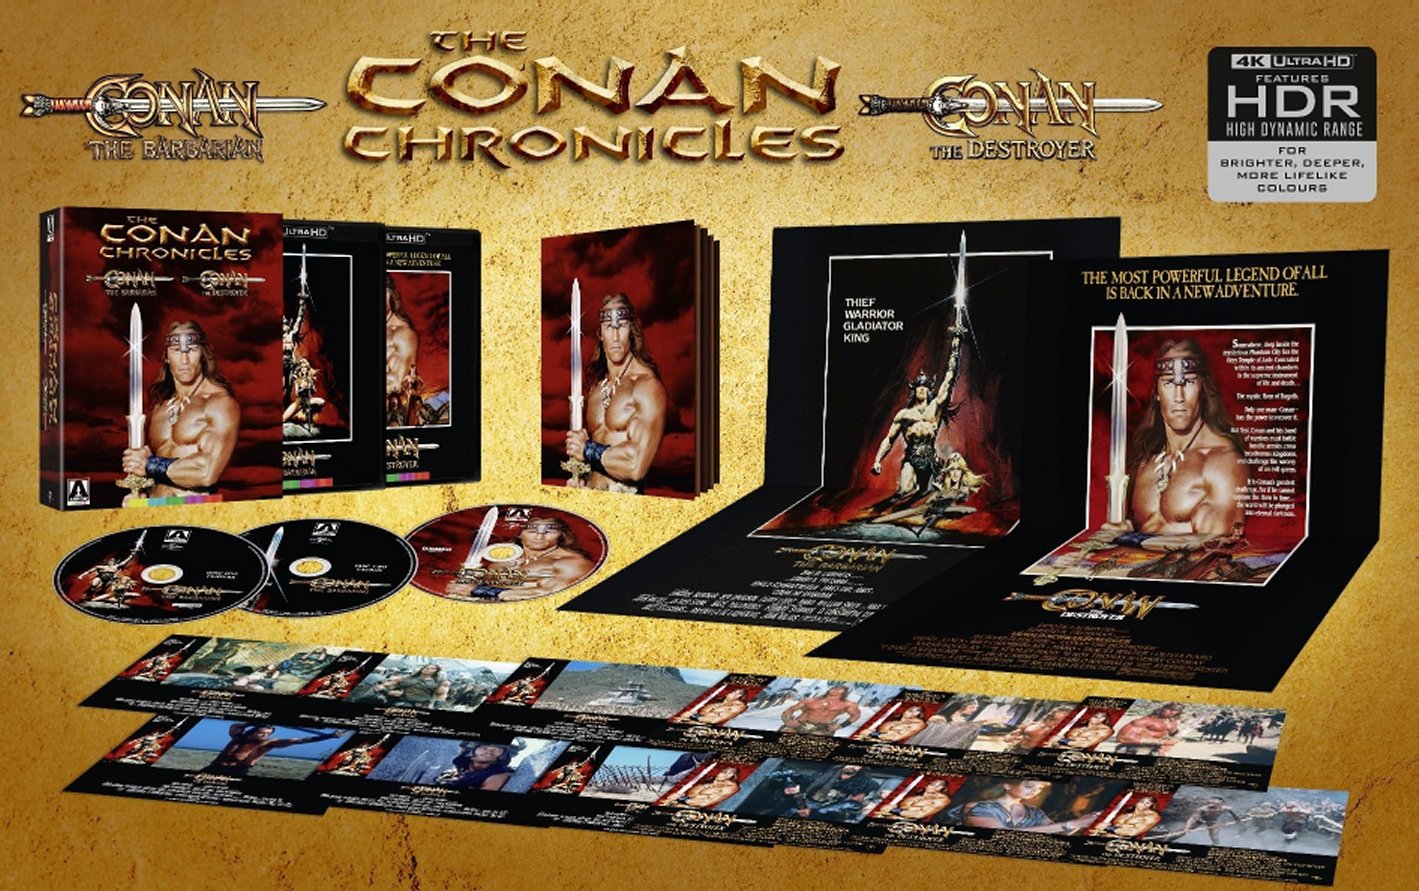 CONAN CHRONICLES: CONAN THE BARBARIAN & CONAN THE-CONAN CHRONICLES: CONAN THE BARBARIAN & CONAN THE